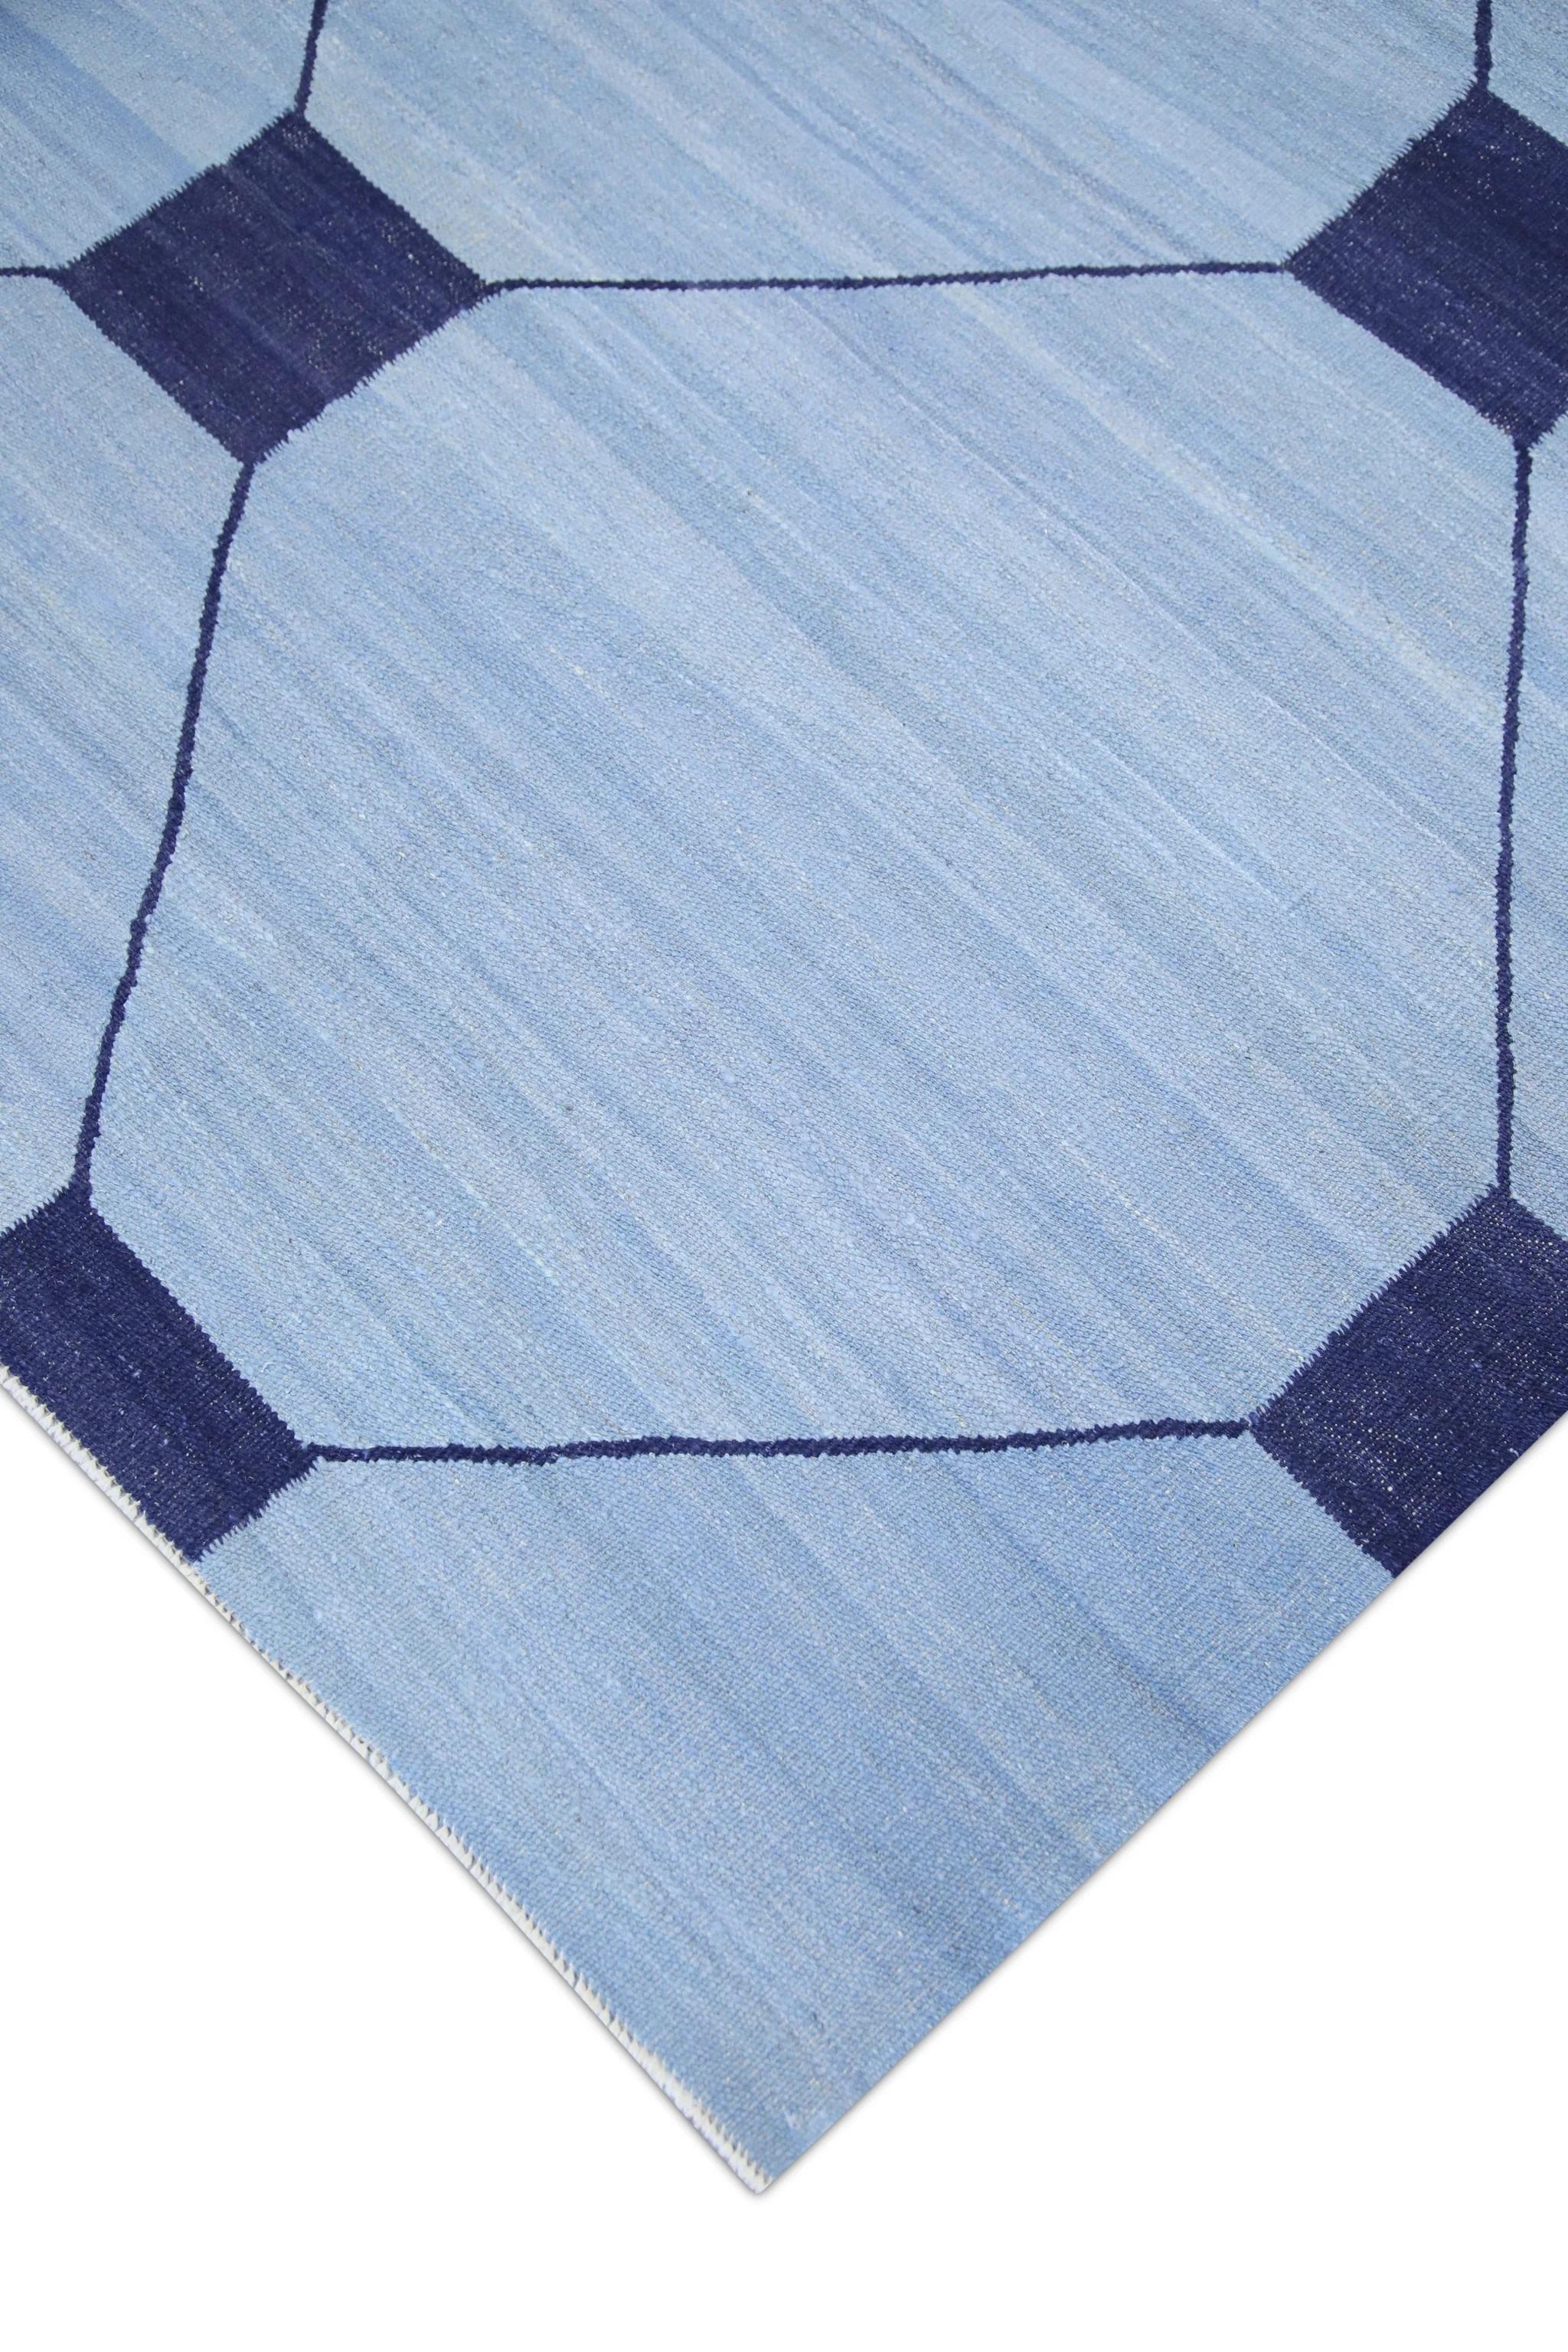 Vegetable Dyed Blue Flatweave Handmade Wool Rug in Navy Geometric Pattern 10'2